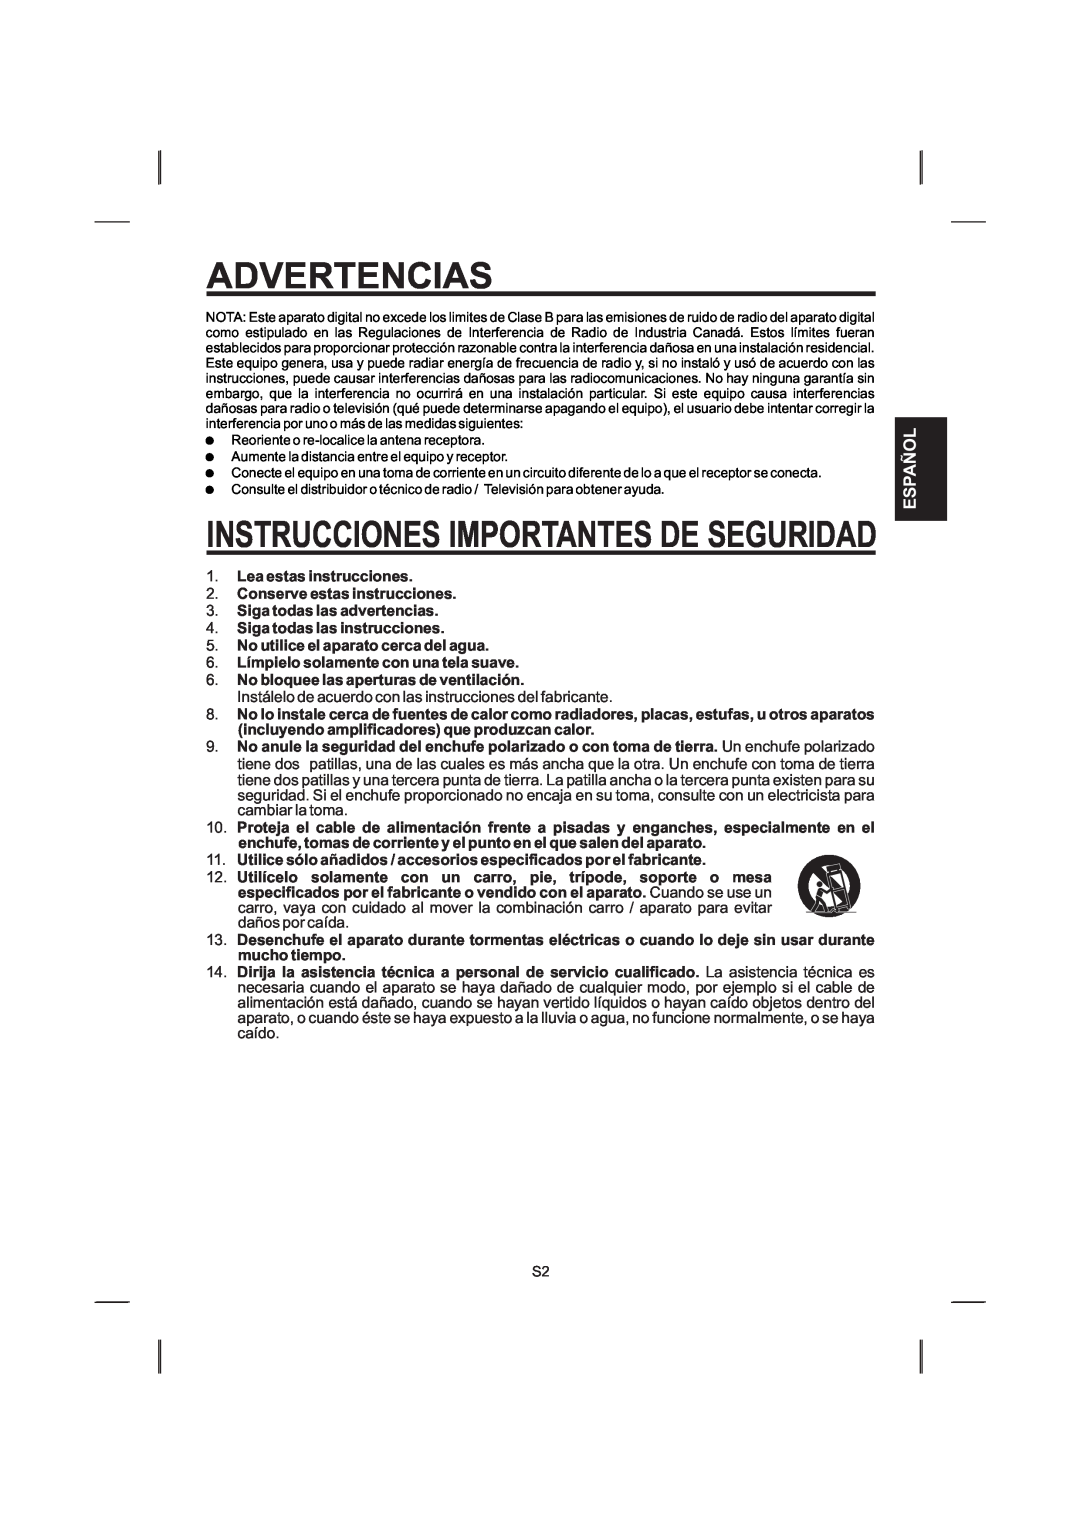 The Singing Machine STVG-359 manual Español, Advertencias, Instrucciones Importantes De Seguridad 